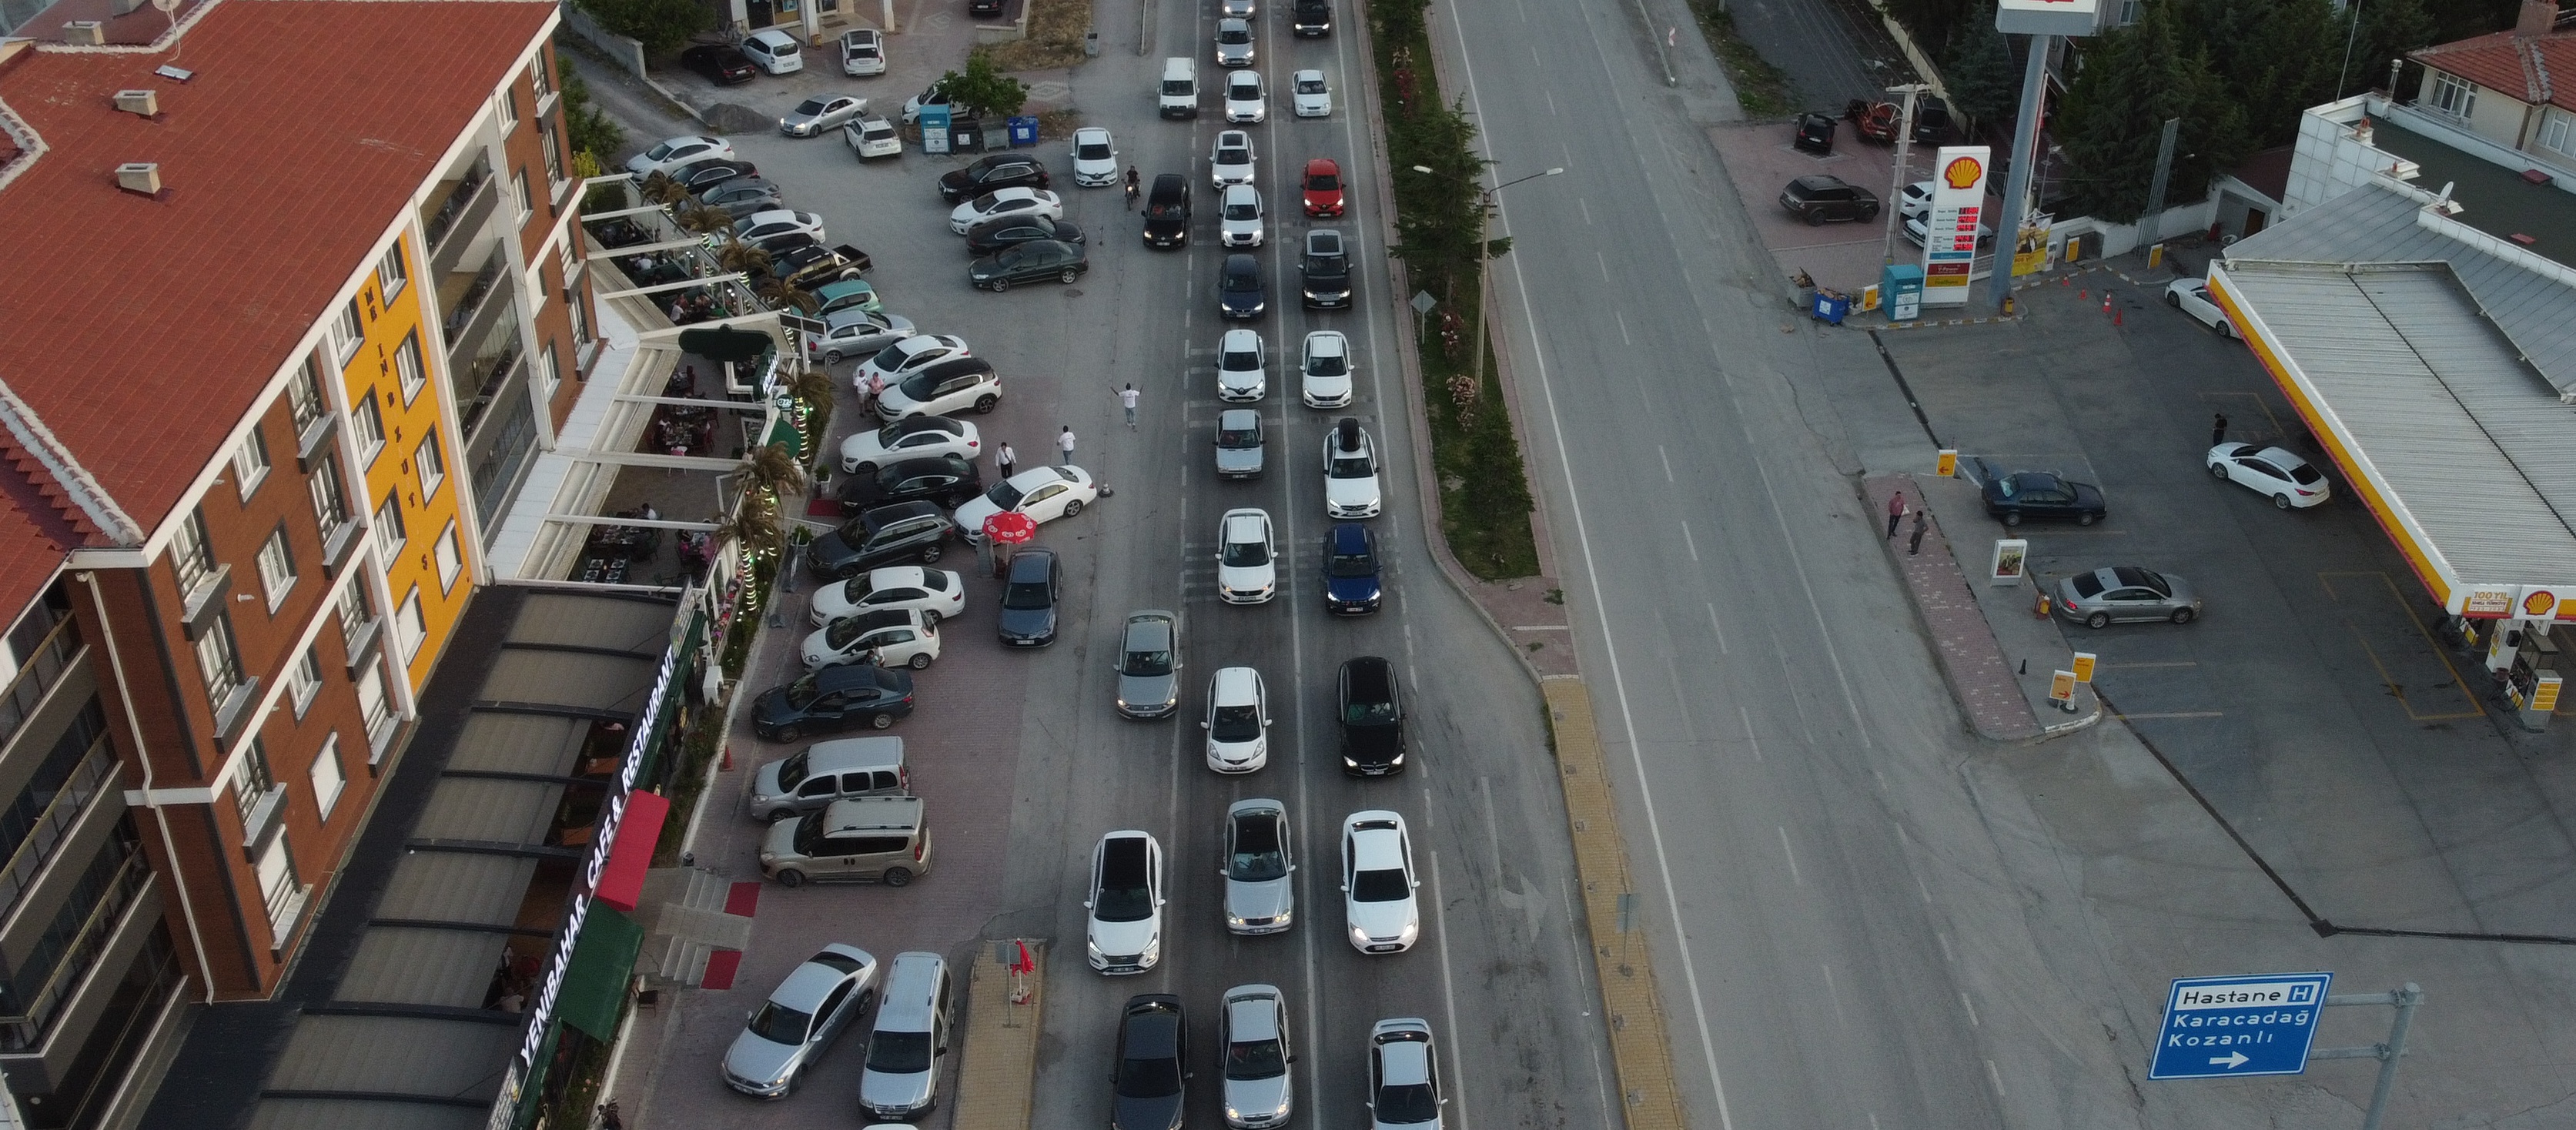 Konya-Ankara kara yolunda tatil dönüşü trafik yoğunluğu yaşanıyor